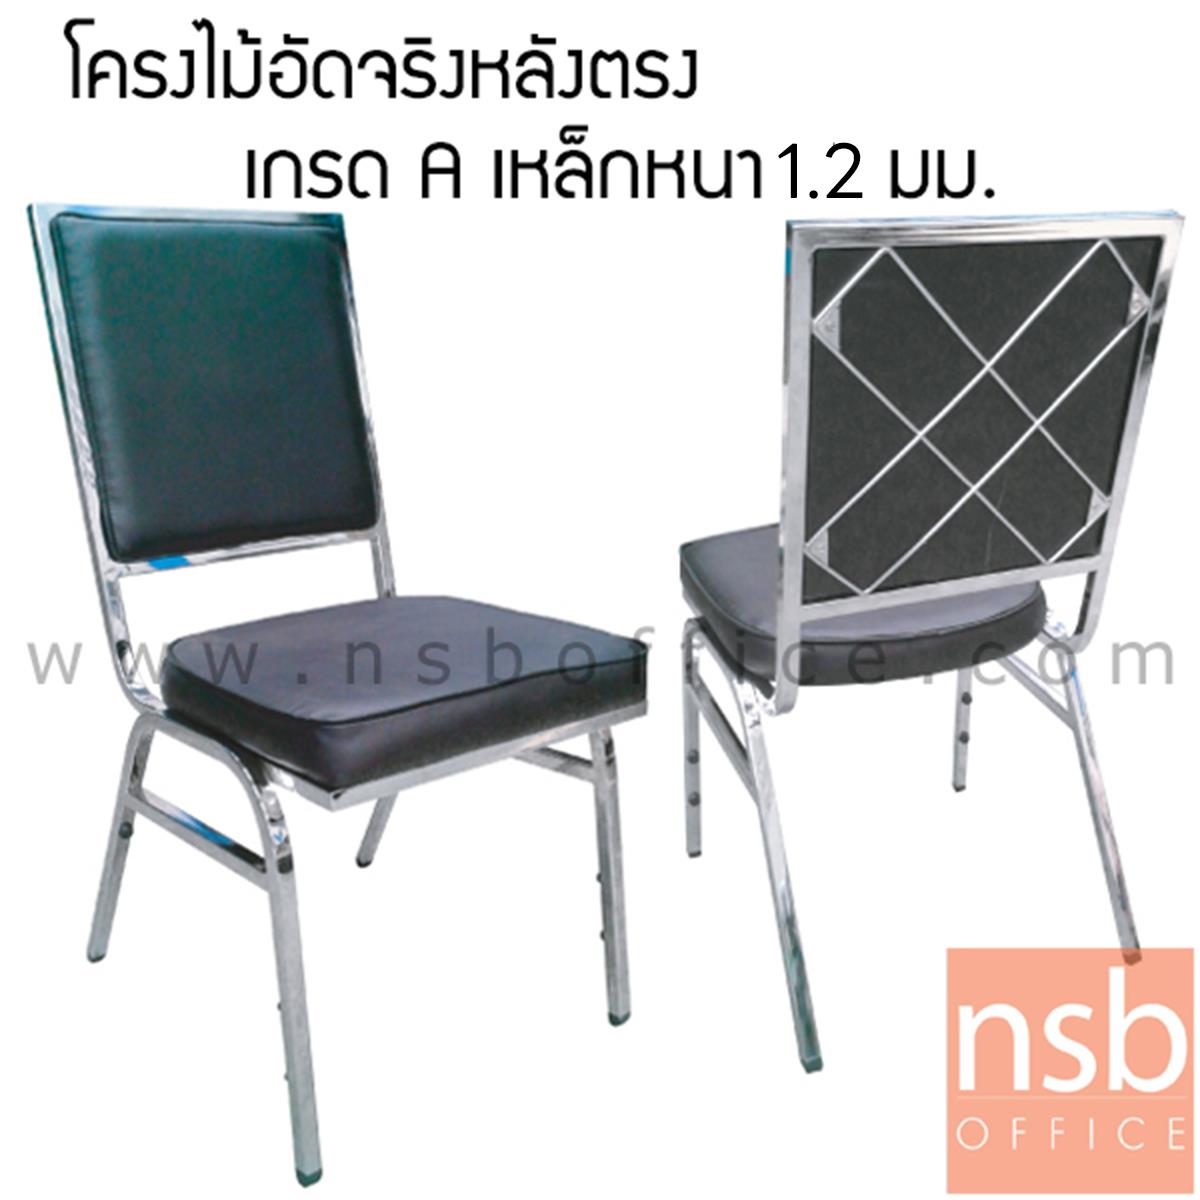 B05A001:เก้าอี้อเนกประสงค์จัดเลี้ยง รุ่น CM-011 ขาเหล็ก 